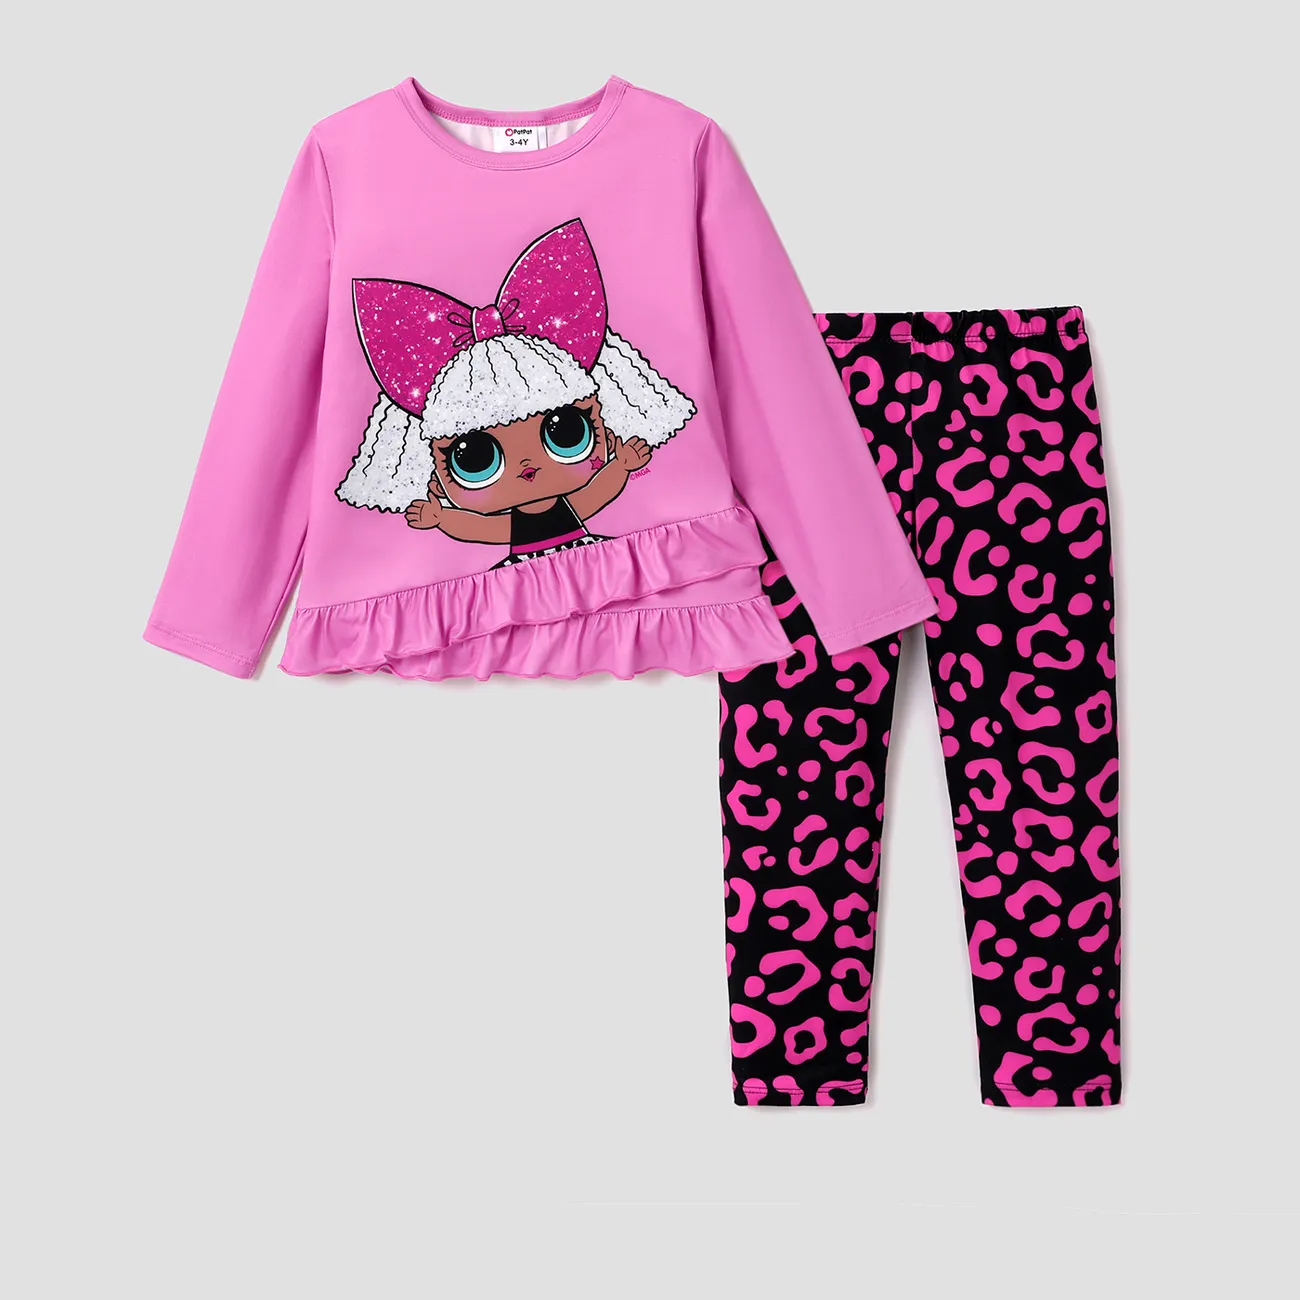 LOL Surprise 2 unidades Niño pequeño Chica Volantes Infantil conjuntos de camiseta Rosado big image 1